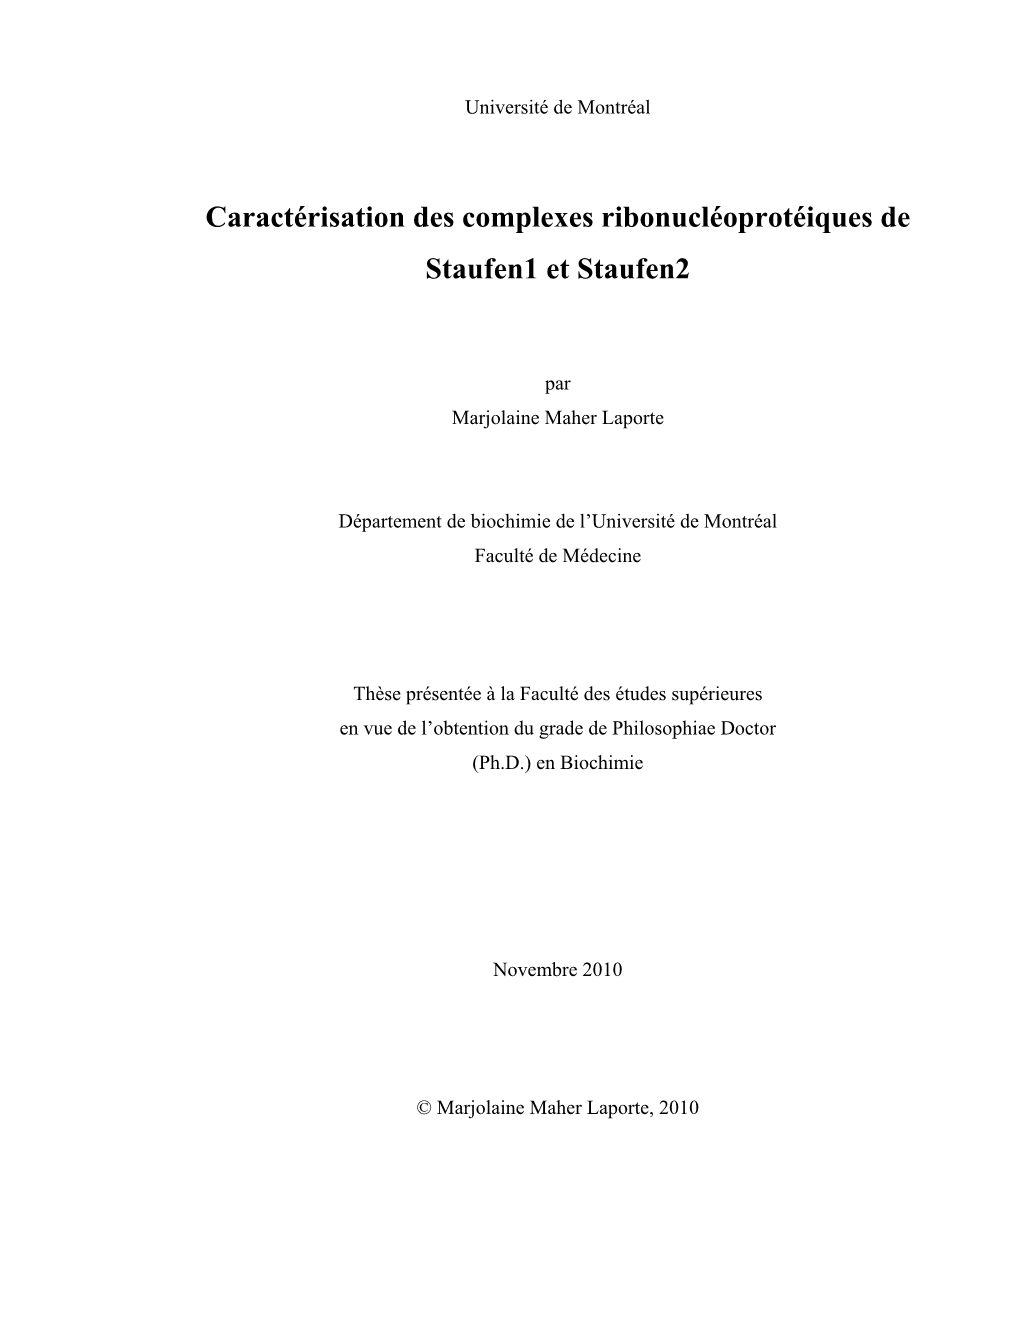 Caractérisation Des Complexes Ribonucléoprotéiques De Staufen1 Et Staufen2